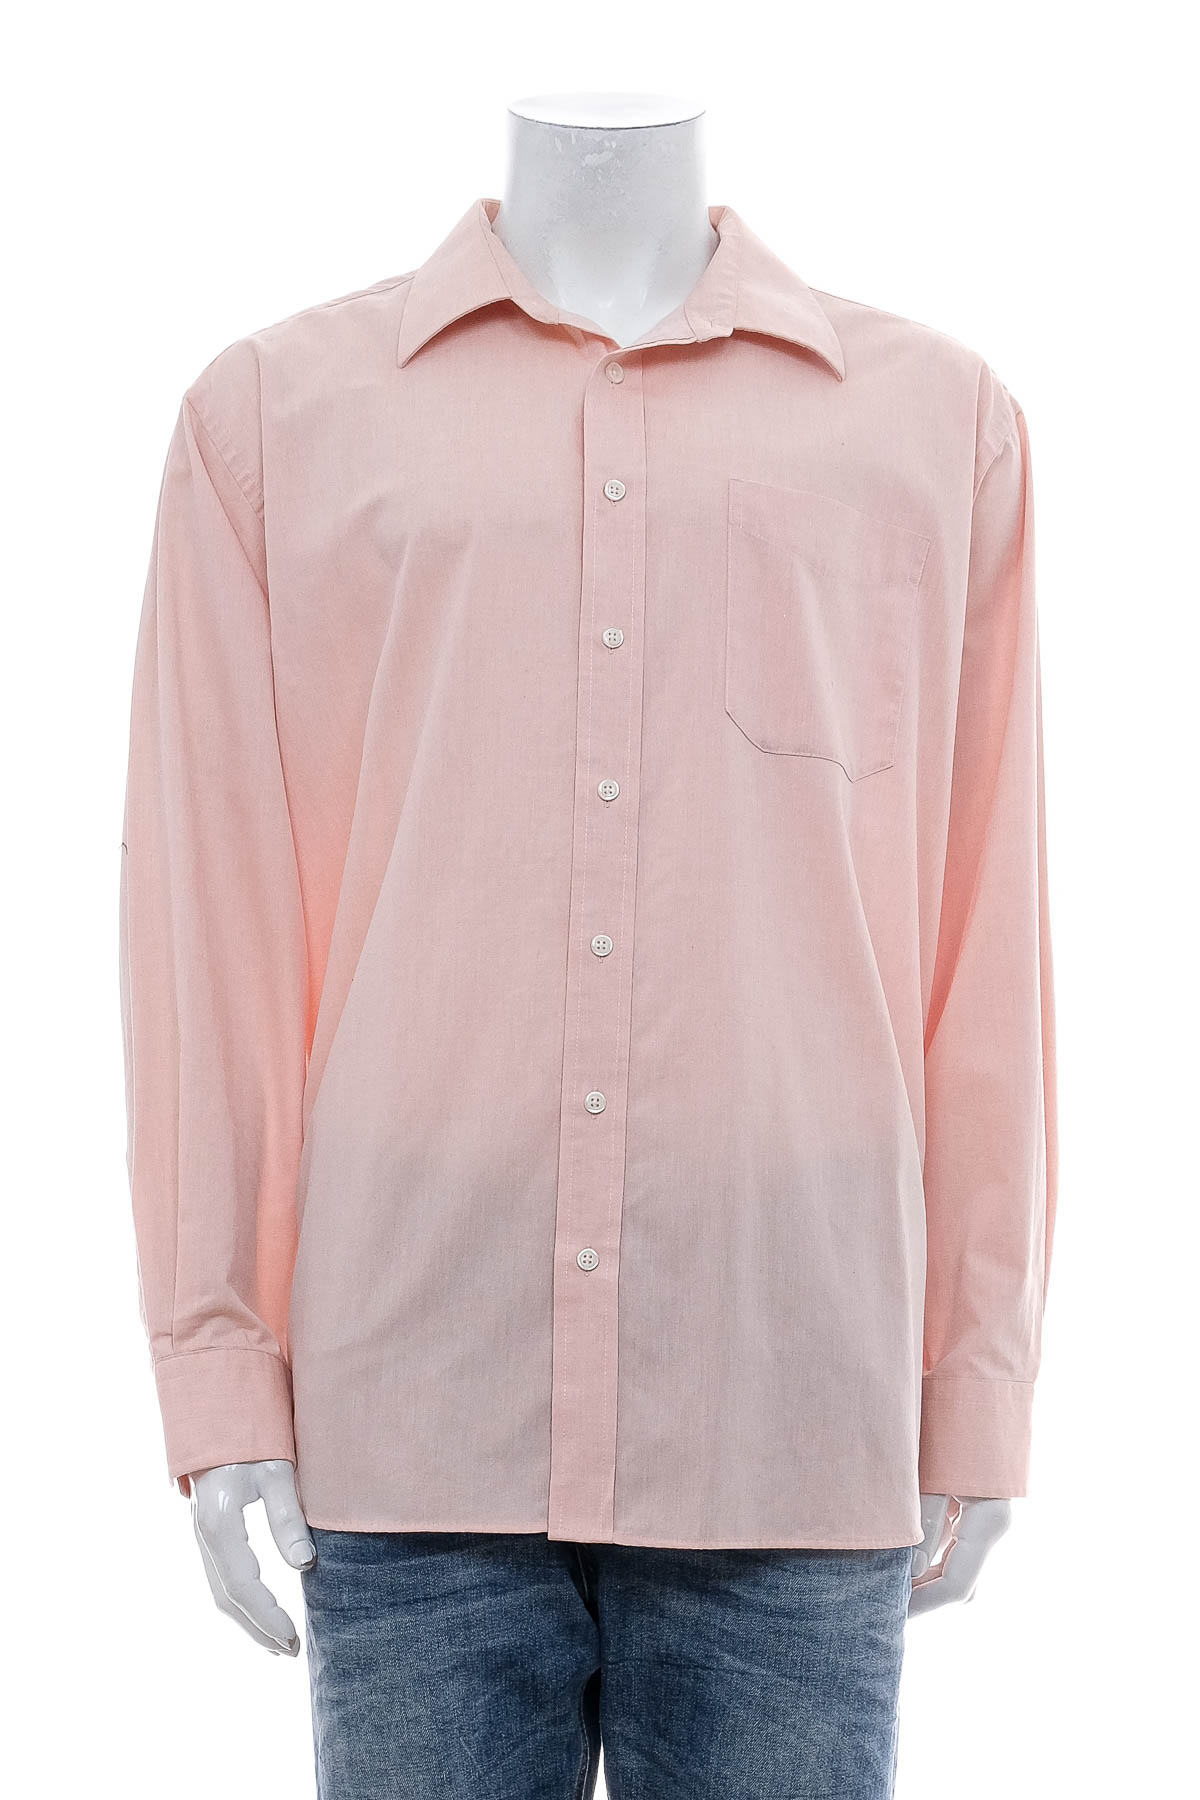 Ανδρικό πουκάμισο - Finest Tailor - 0